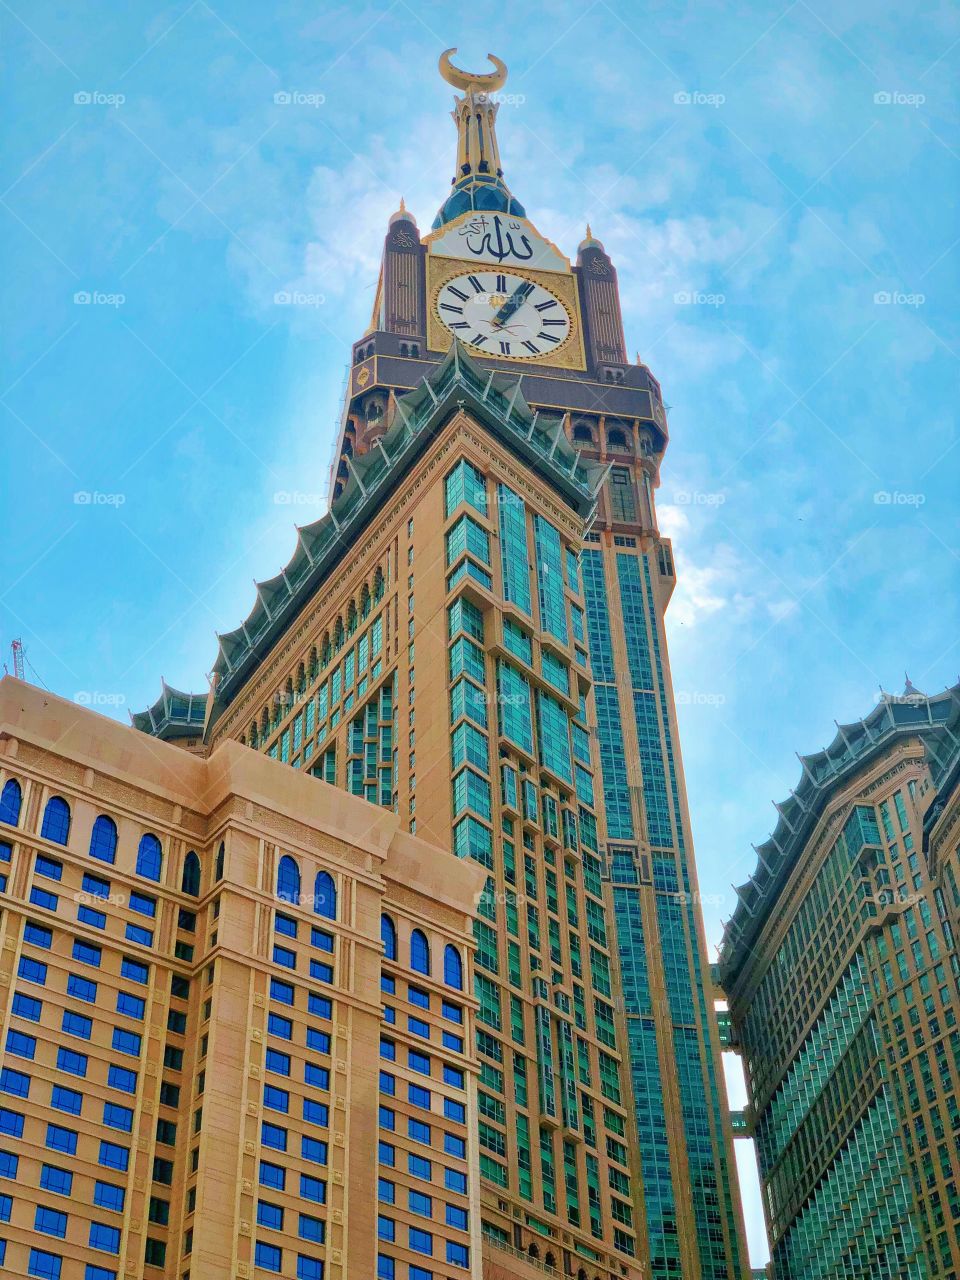 Makkah Royal clock tower